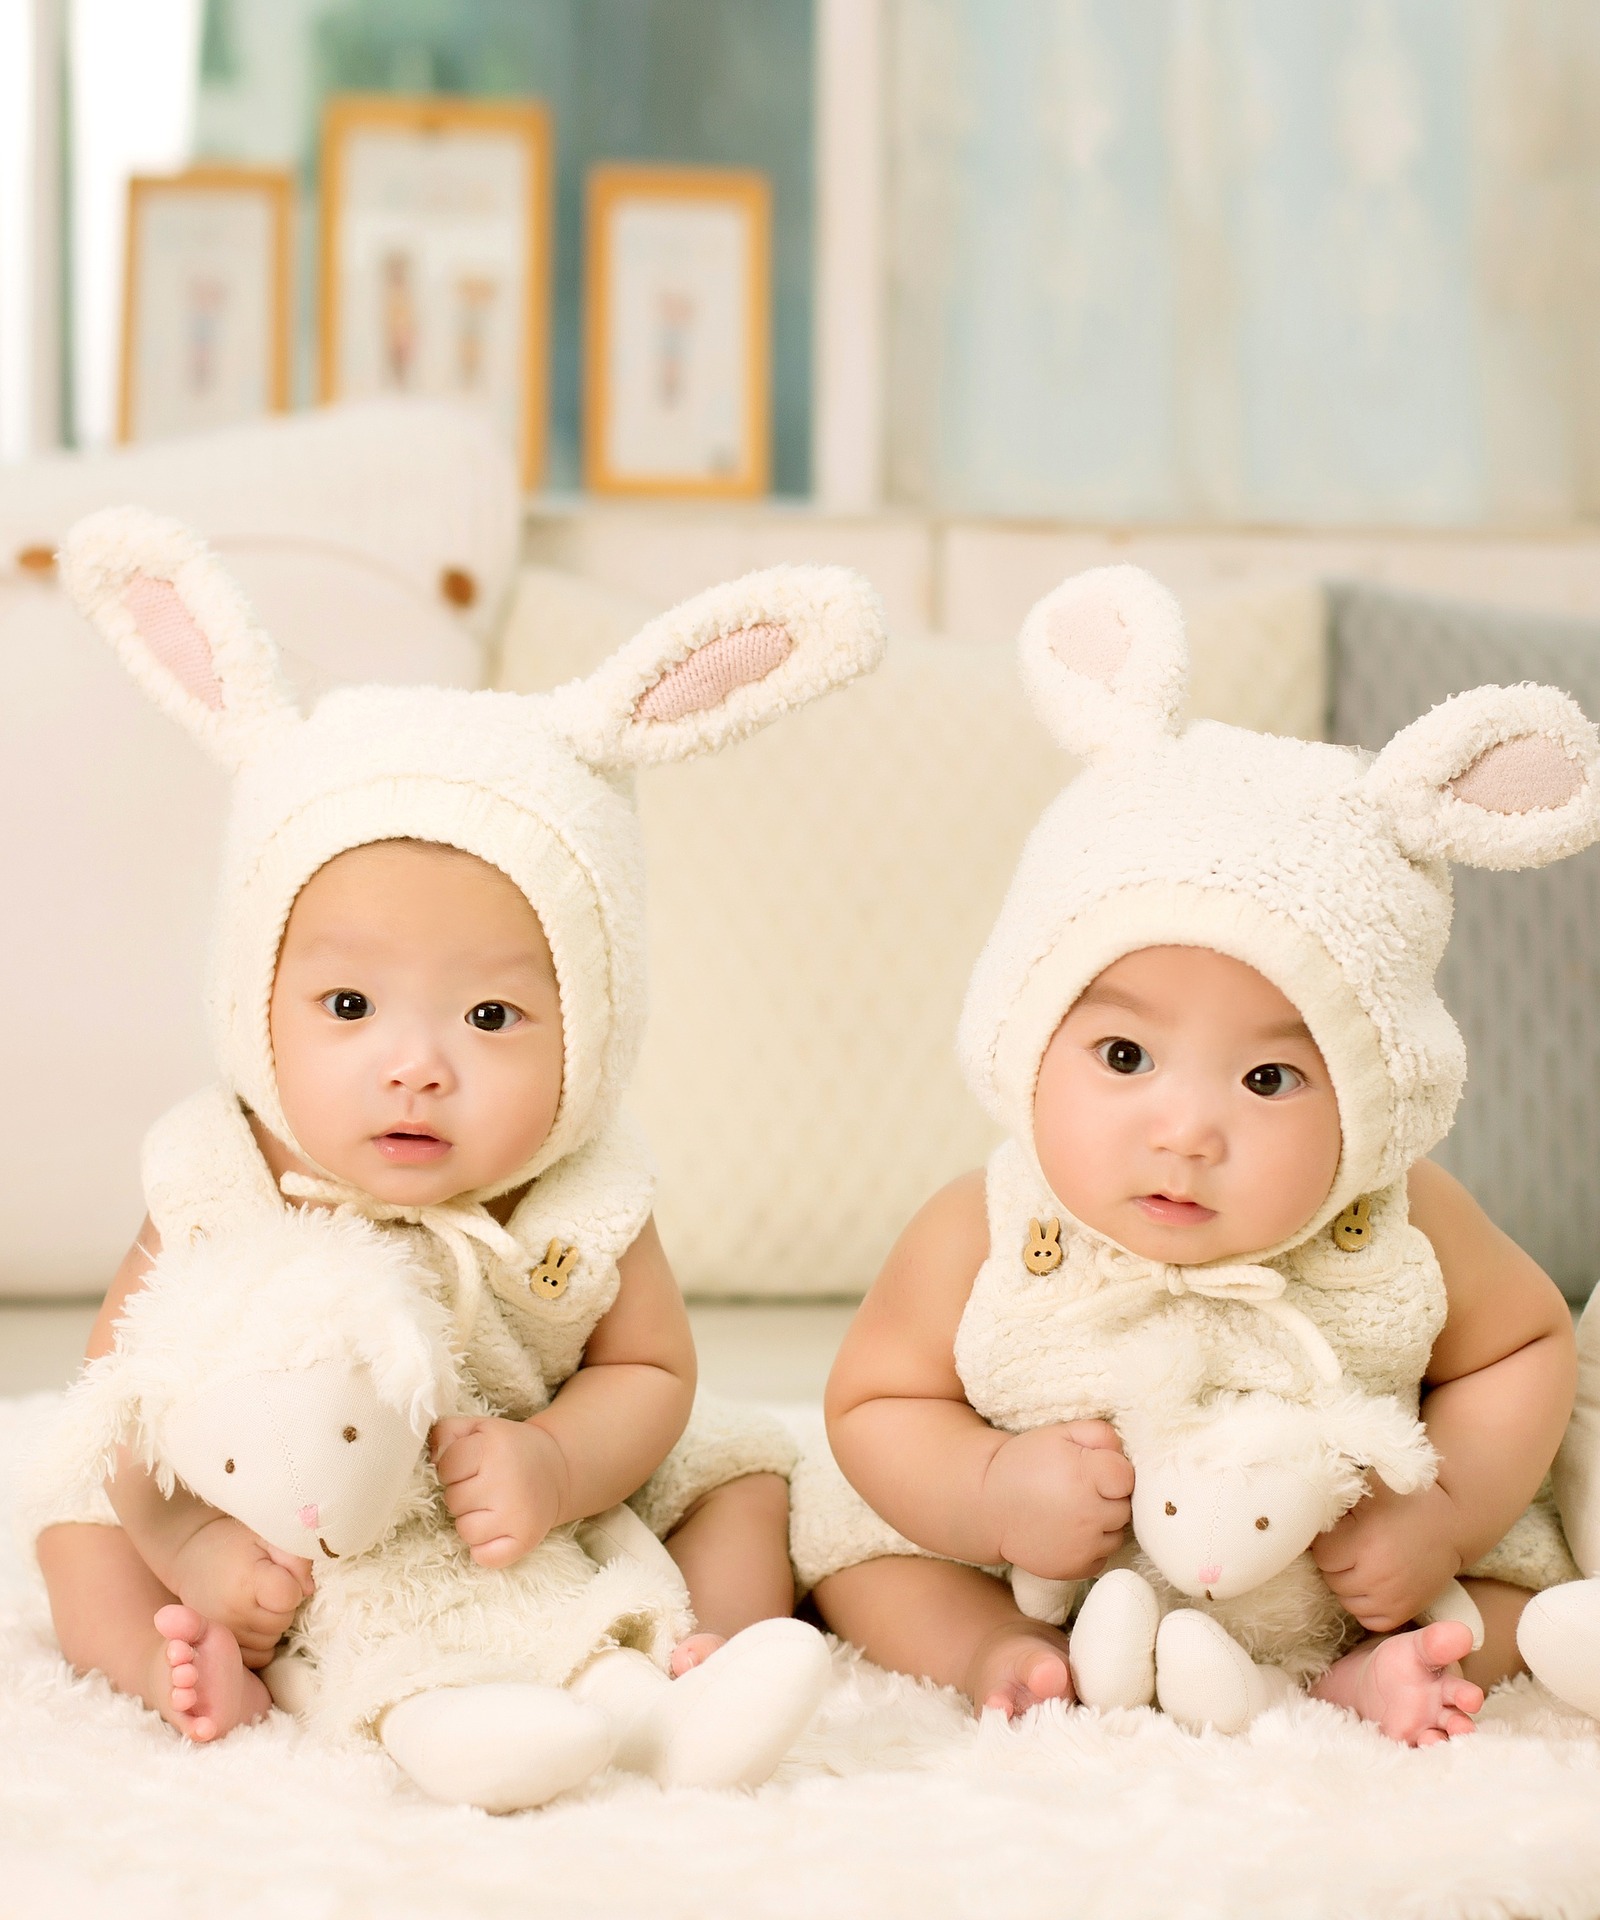 Babies dressed as bunnies